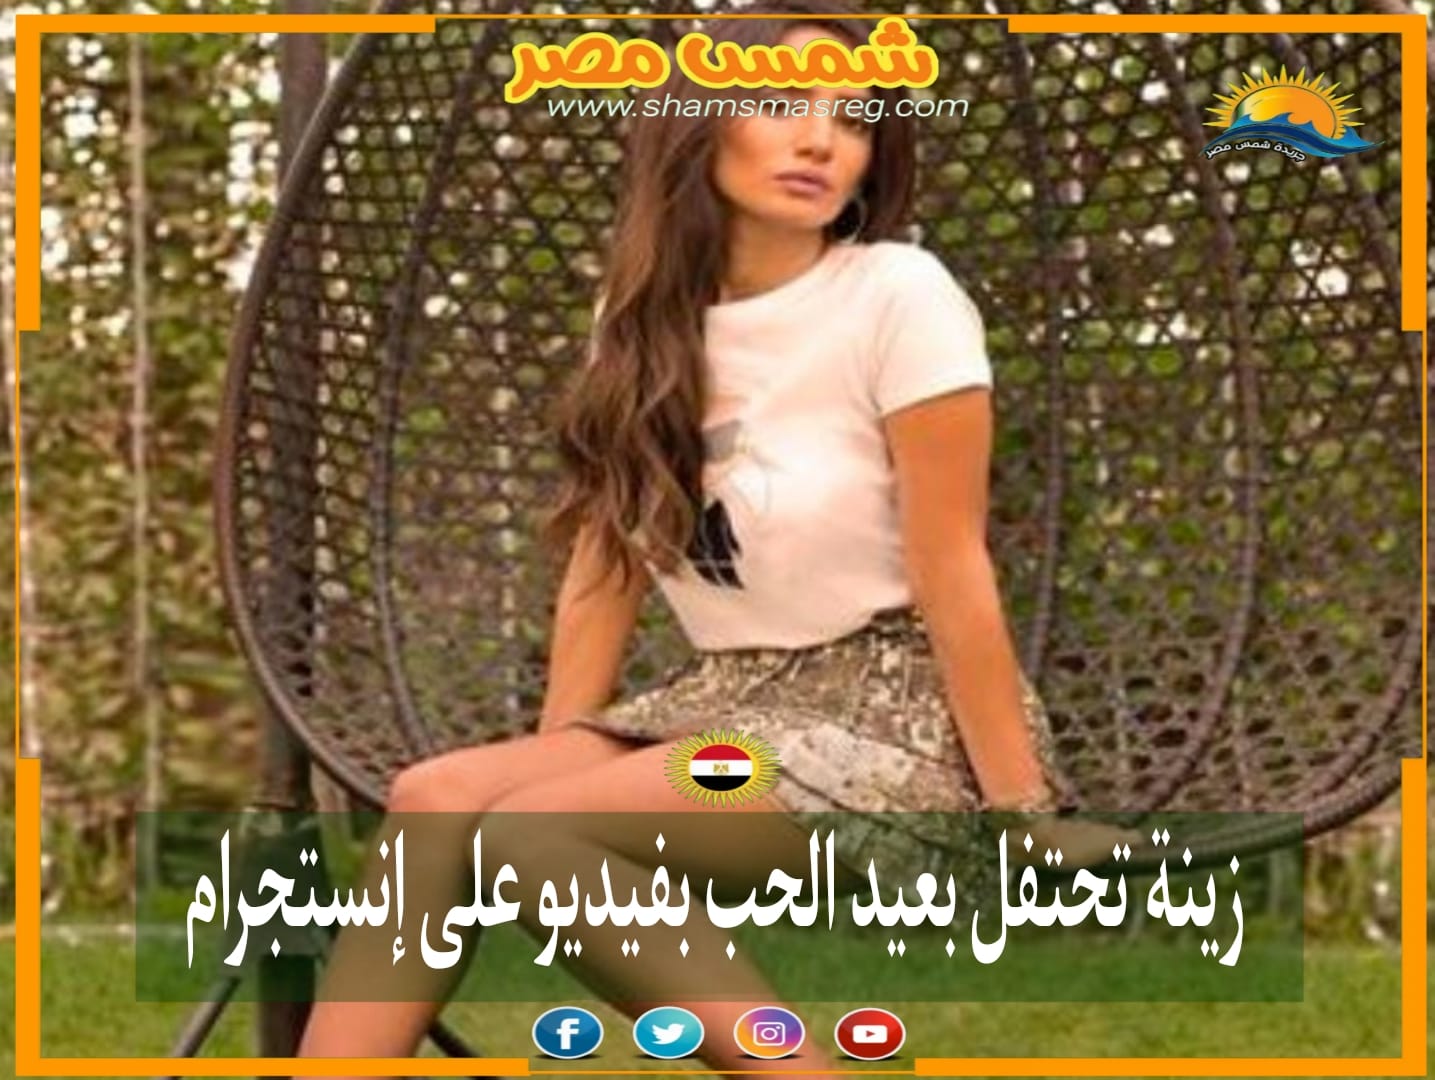 |شمس مصر|.. زينة تحتفل بعيد الحب بفيديو على إنستجرام 